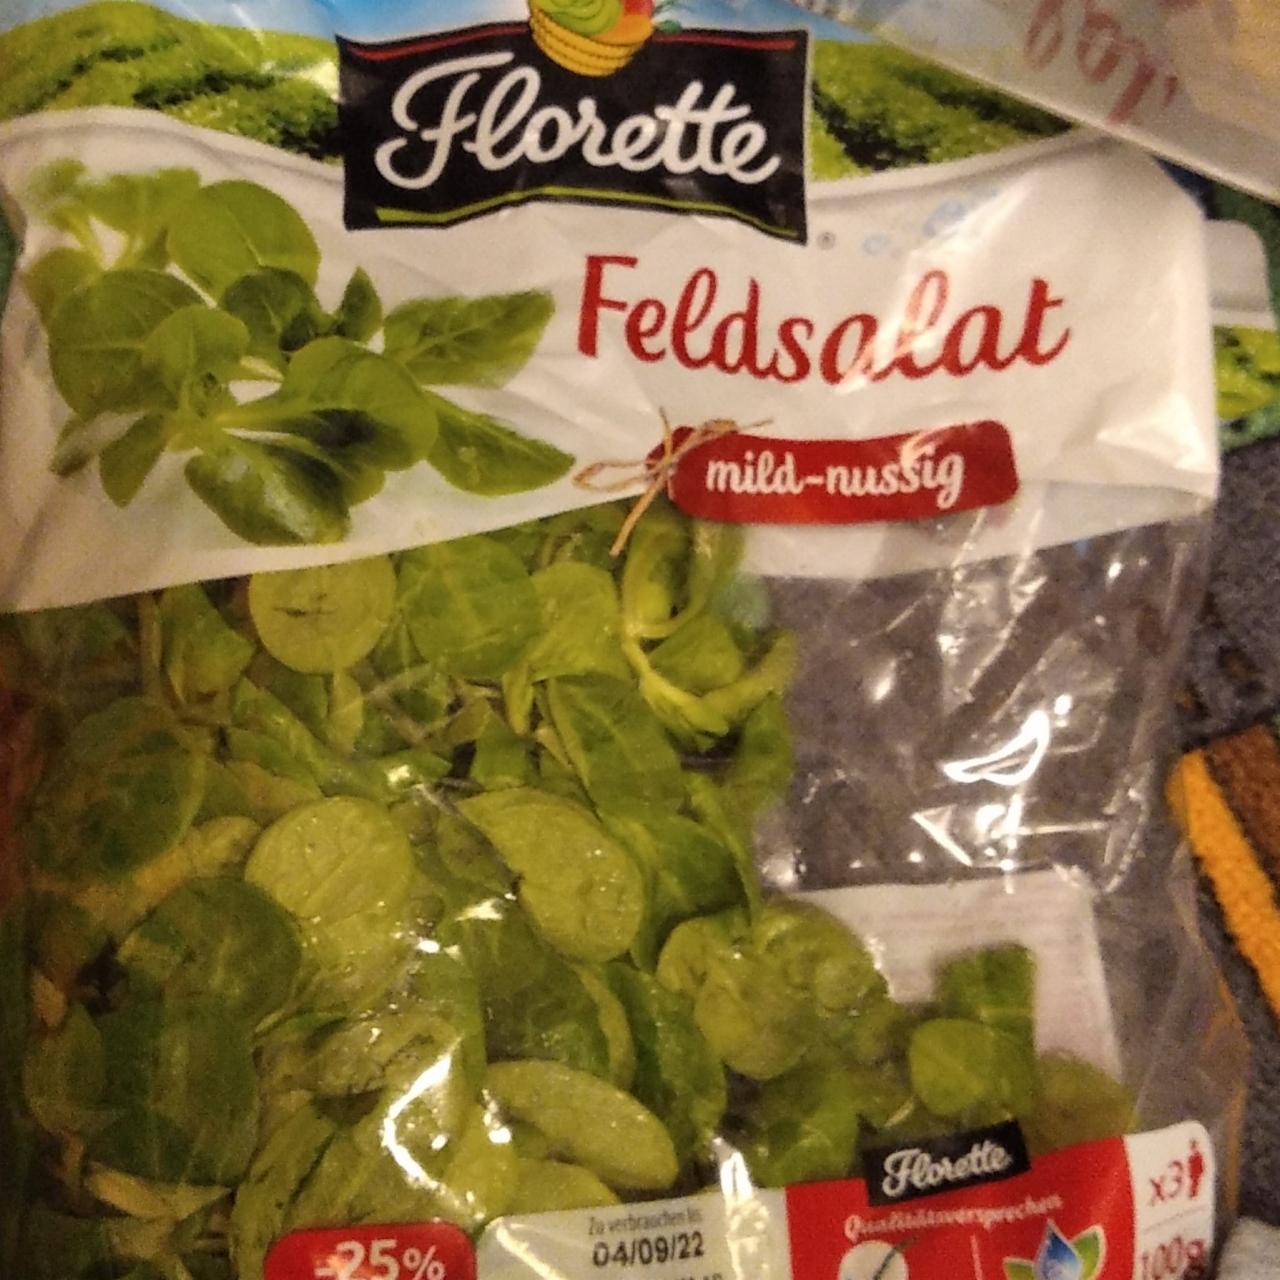 Фото - листья салата Florette